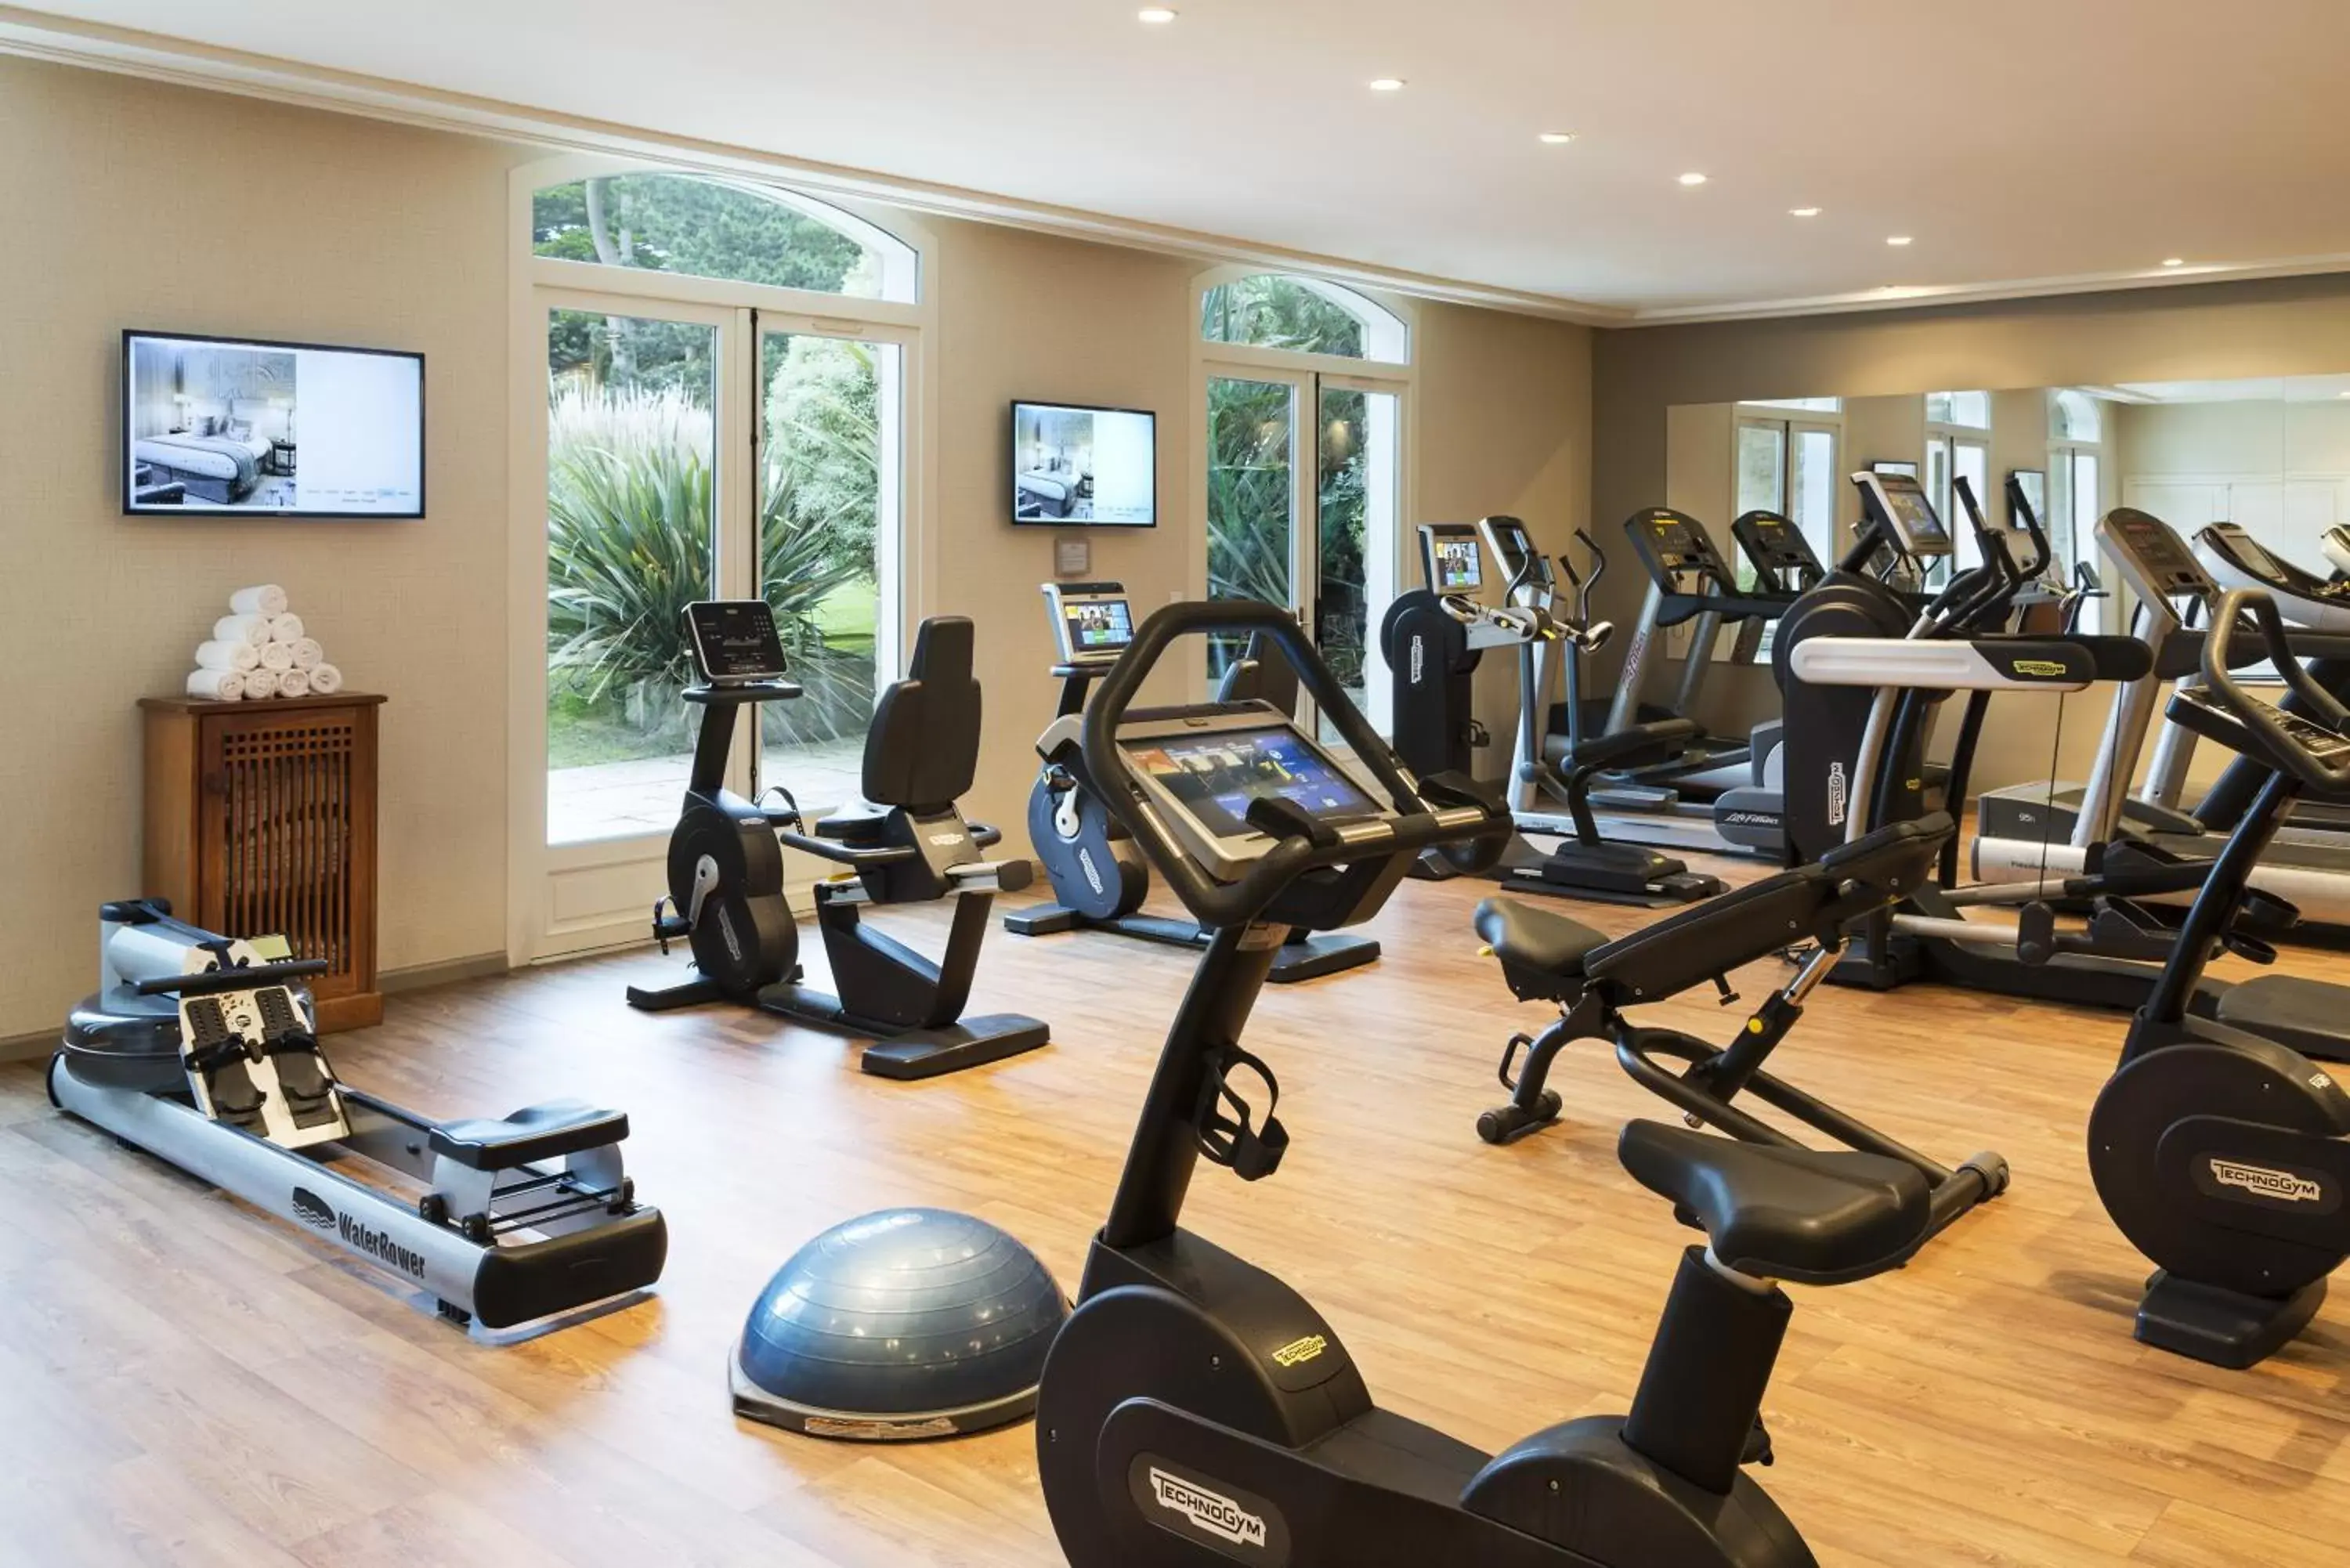 Fitness centre/facilities, Fitness Center/Facilities in Hôtel Barrière Le Royal La Baule